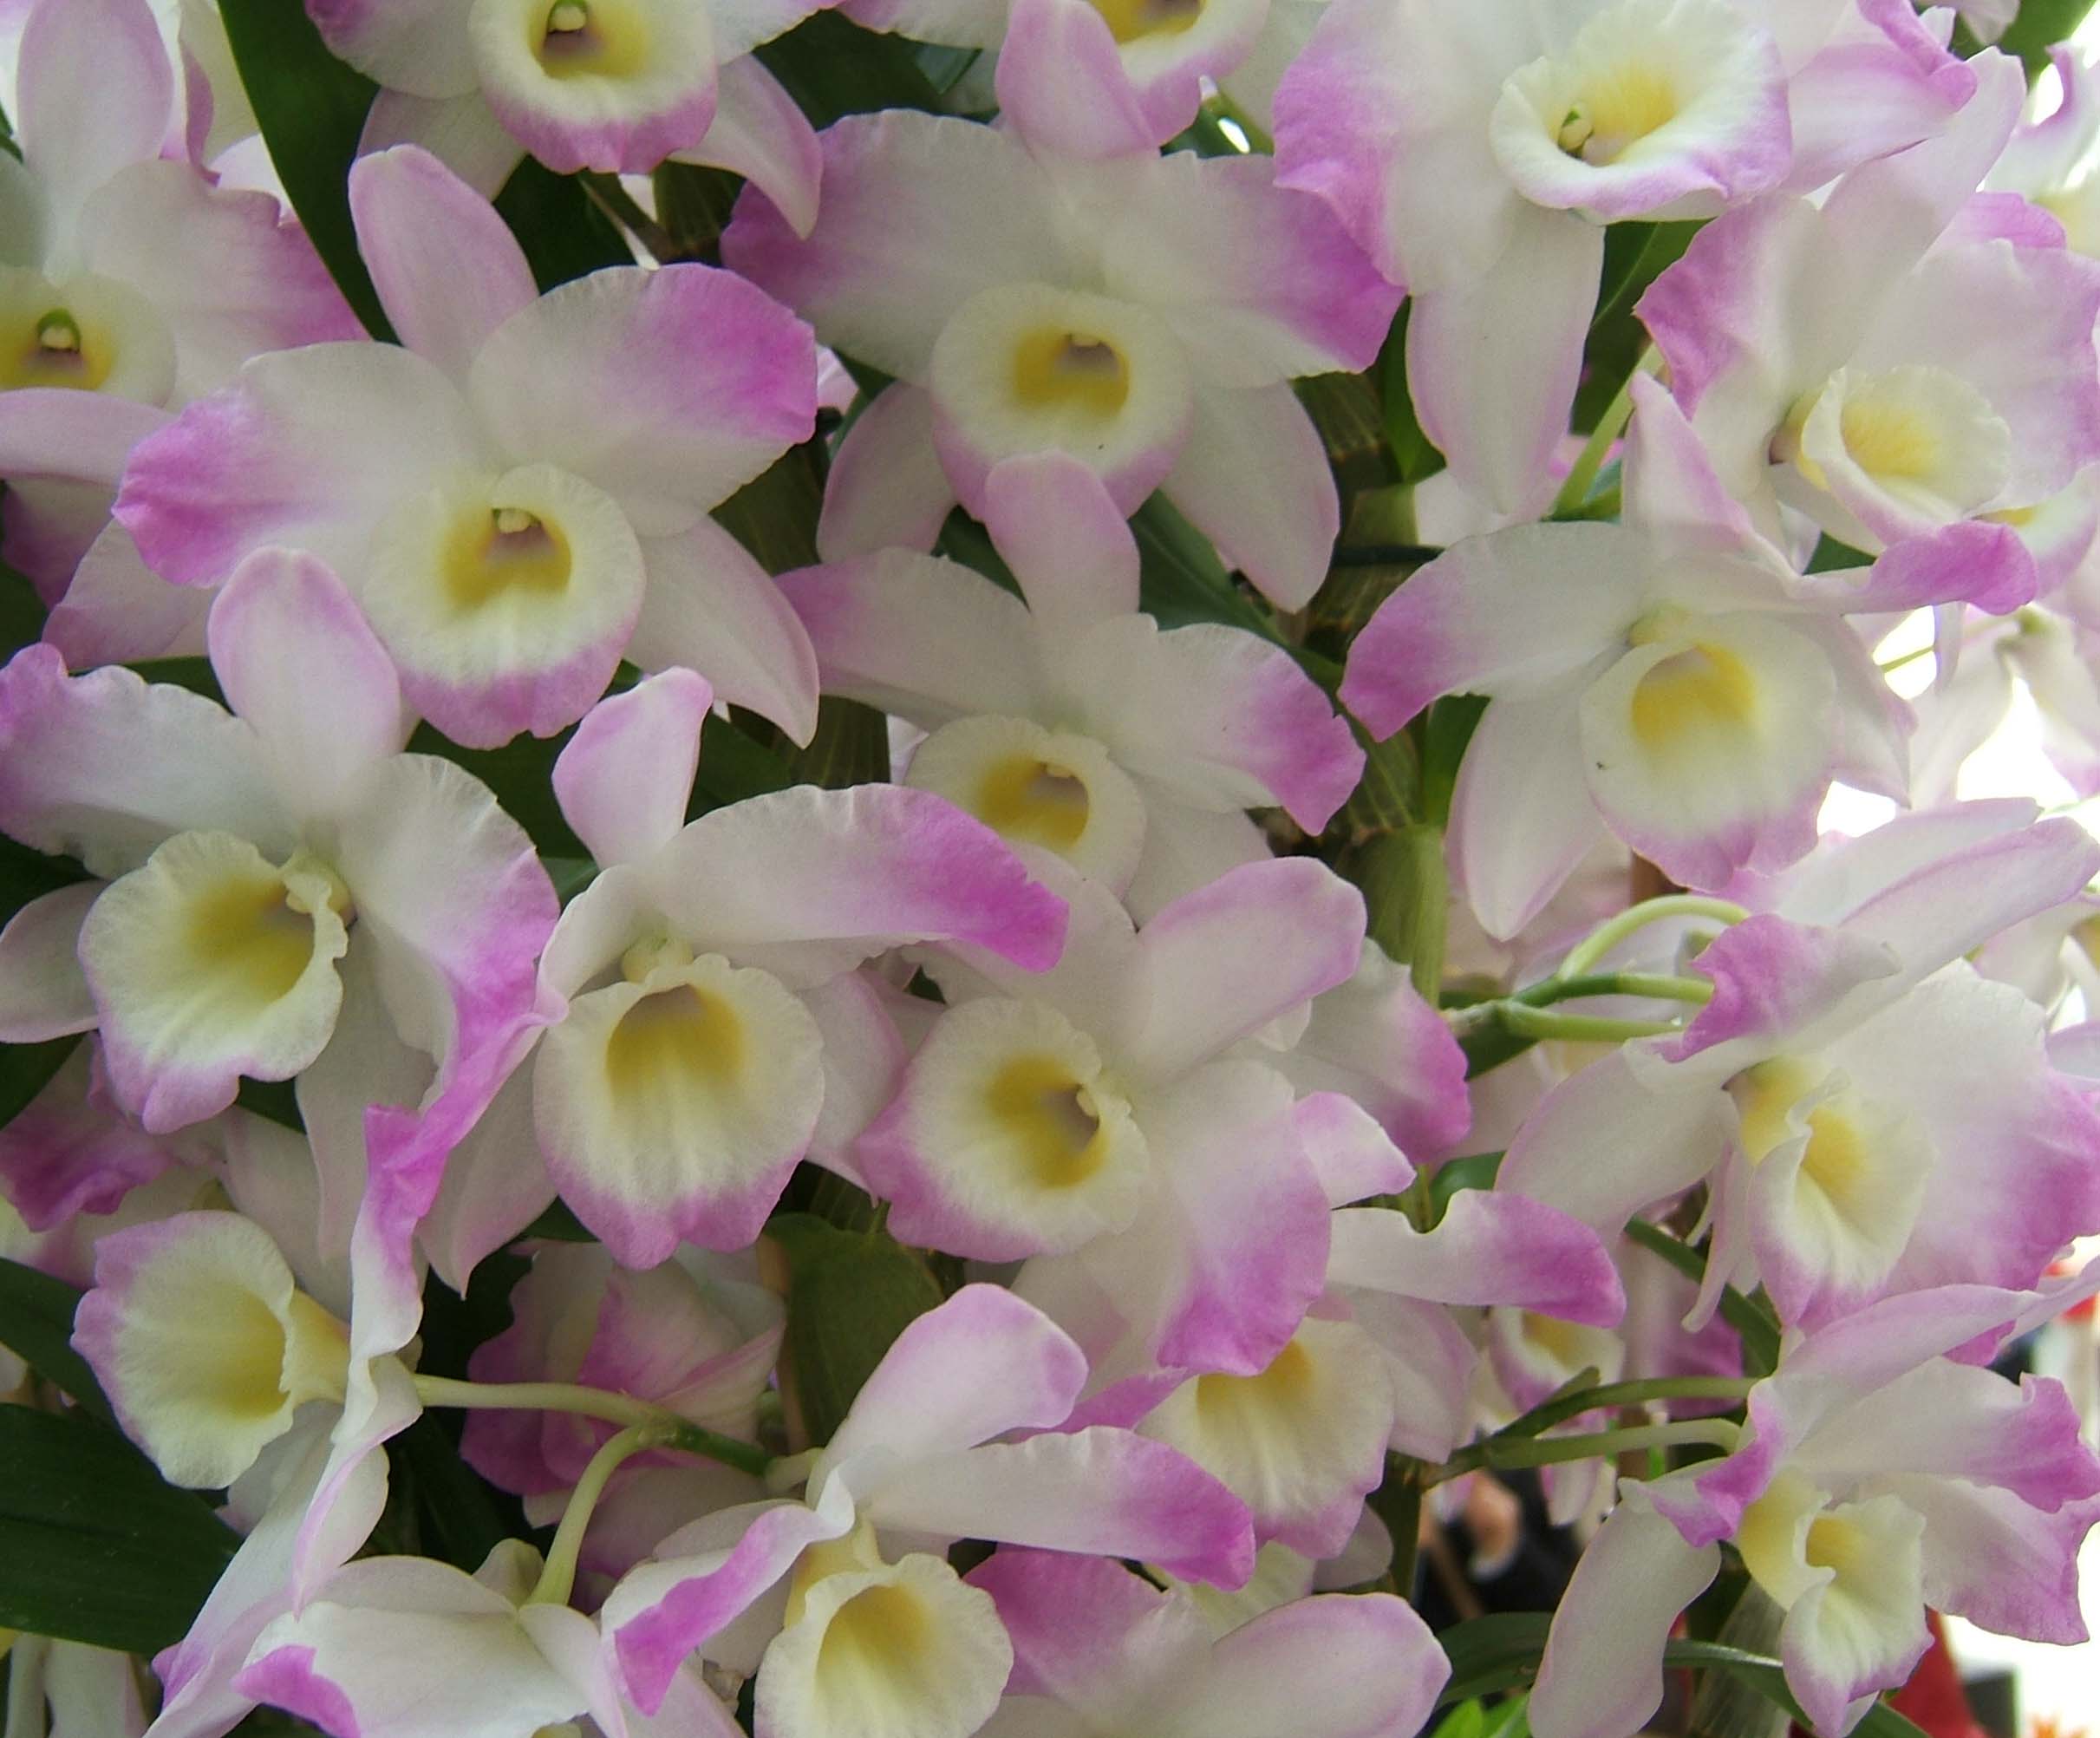 Размножение орхидеи дендробиум и уход в домашних условиях, подробное видео и фото, особенности, как размножить черенками